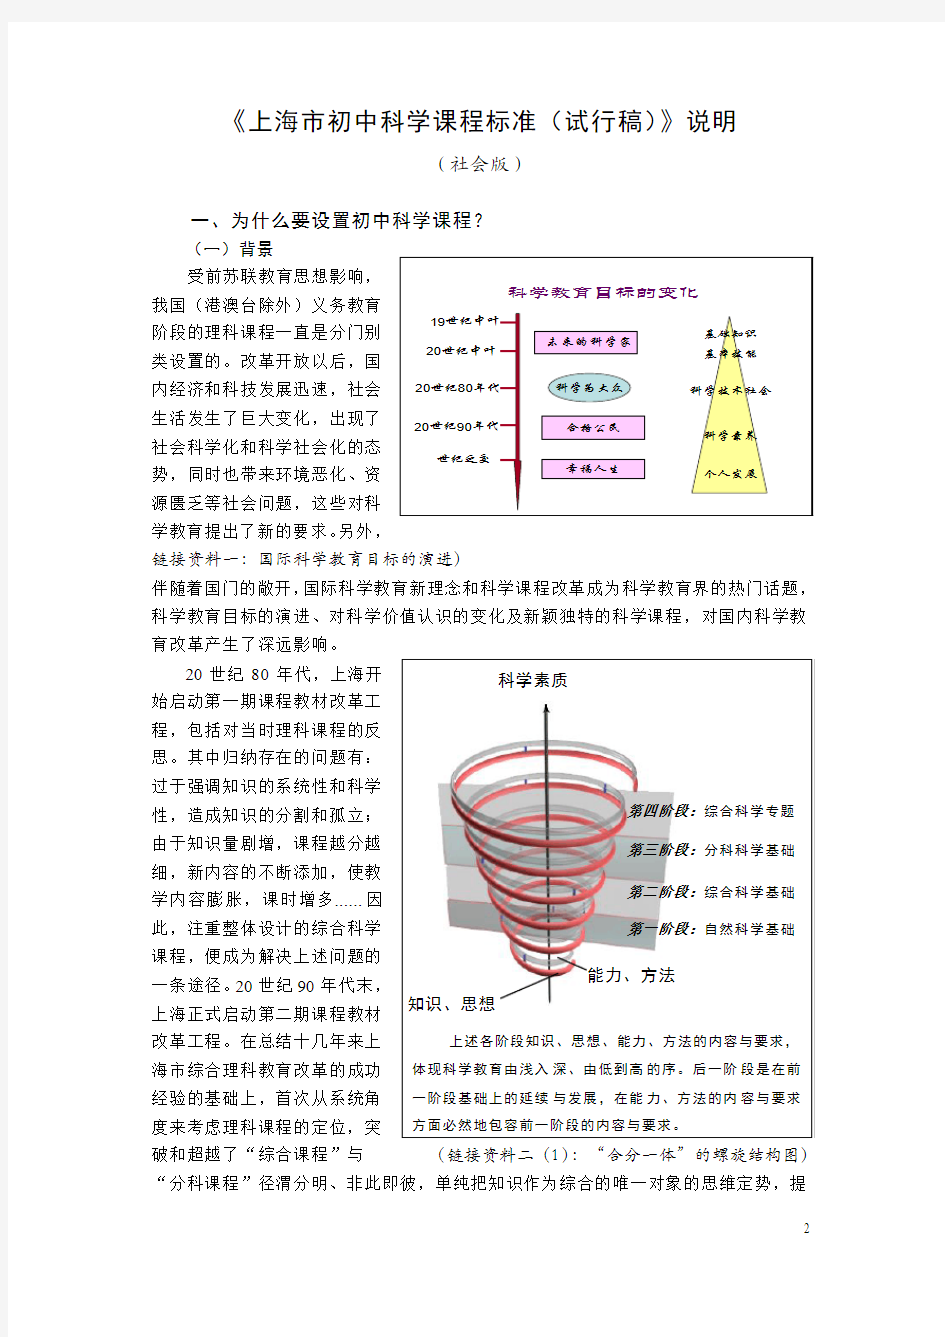 上海市初中科学课程标准(试行稿)说明